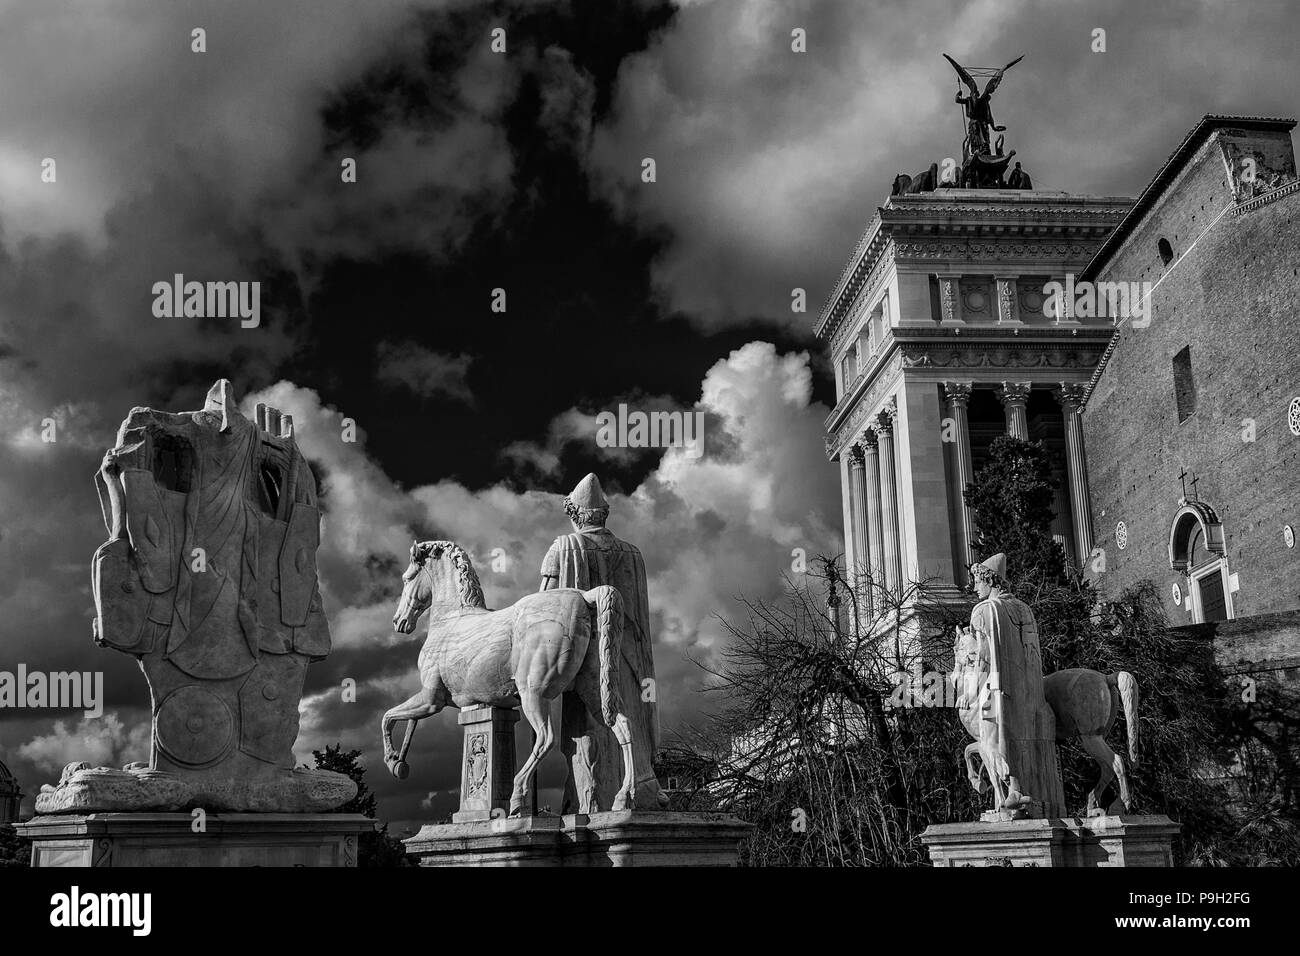 Palatino balustrade monumentale avec des anciennes statues romaines et nuages dans le centre historique de Rome (noir et blanc) Banque D'Images